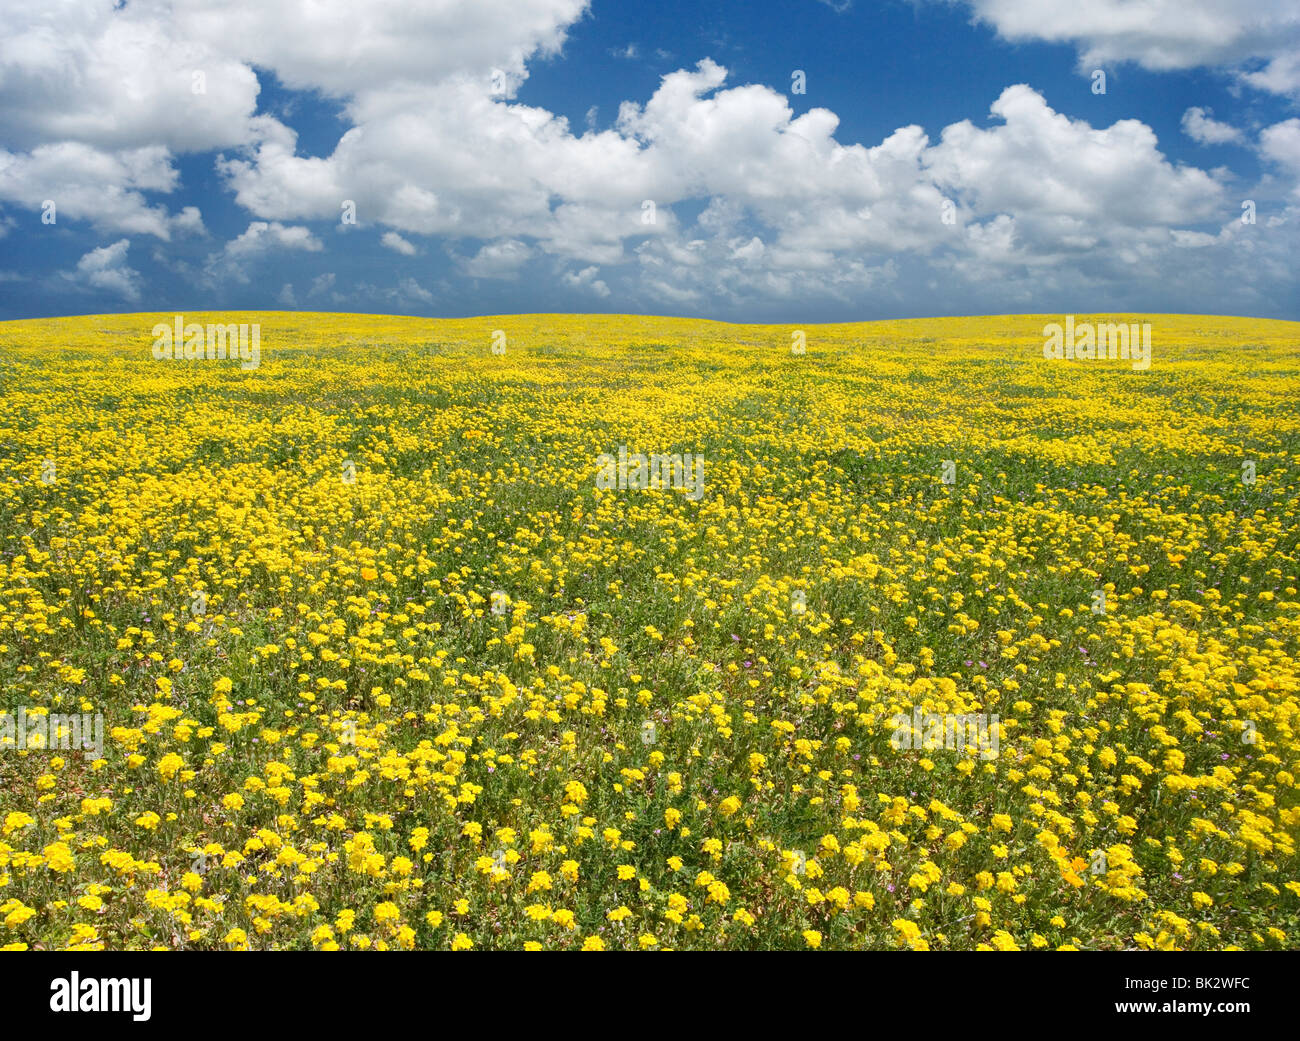 Un gran campo de flores amarillas que continúa indefinidamente. El fotógrafo retocar la línea del horizonte y el cielo. Foto de stock